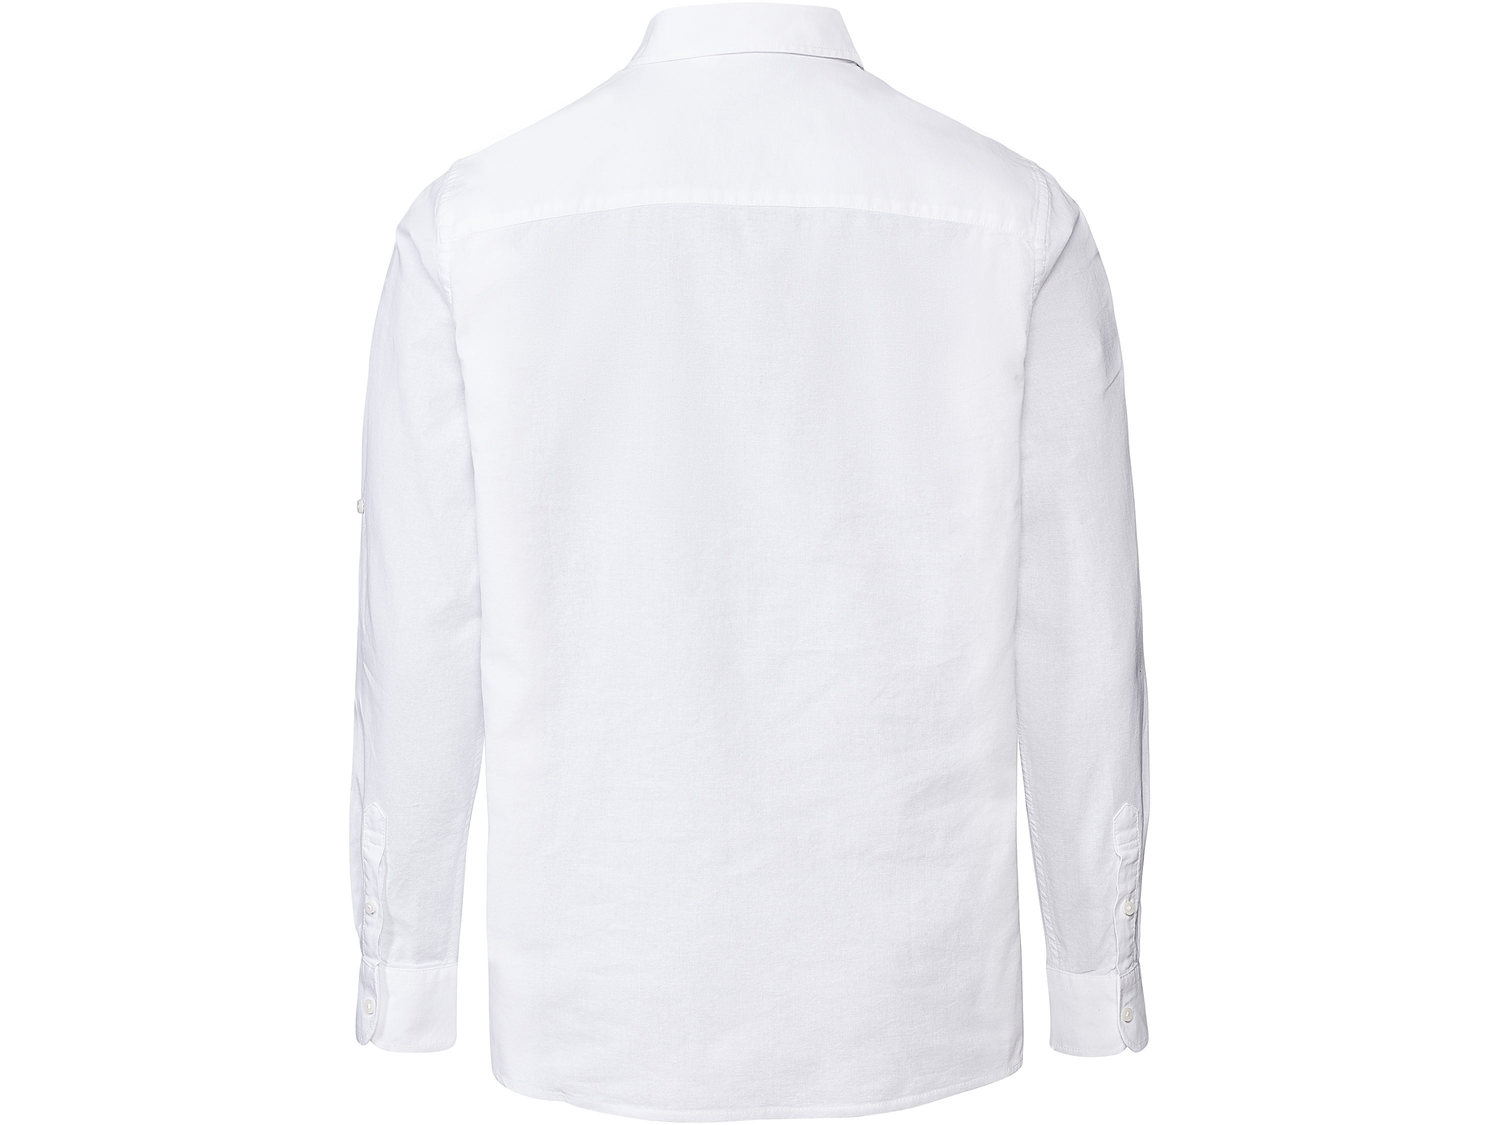 Koszula Livergy, cena 34,99 PLN 
PONADCZASOWA STYLIZACJA
Koszula, kurtka o wyglądzie ...